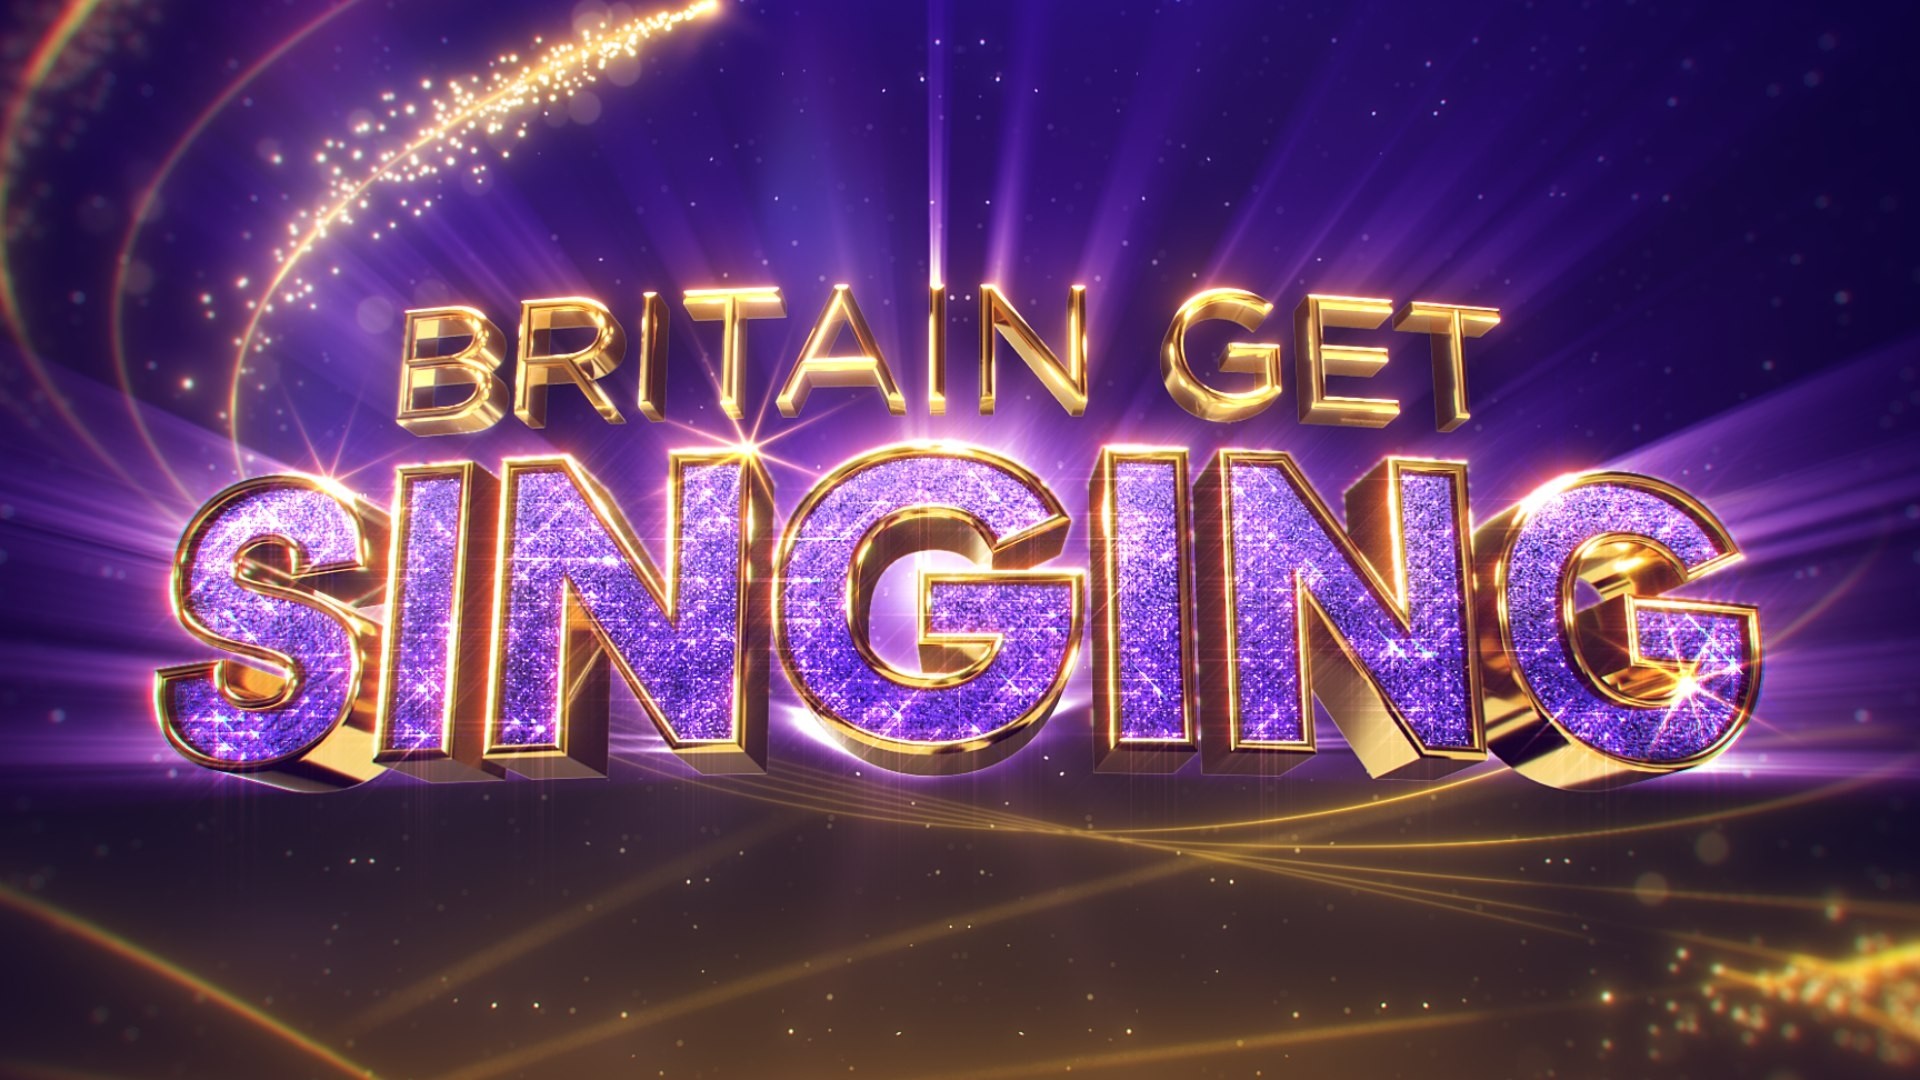 Britain get singing - ITV